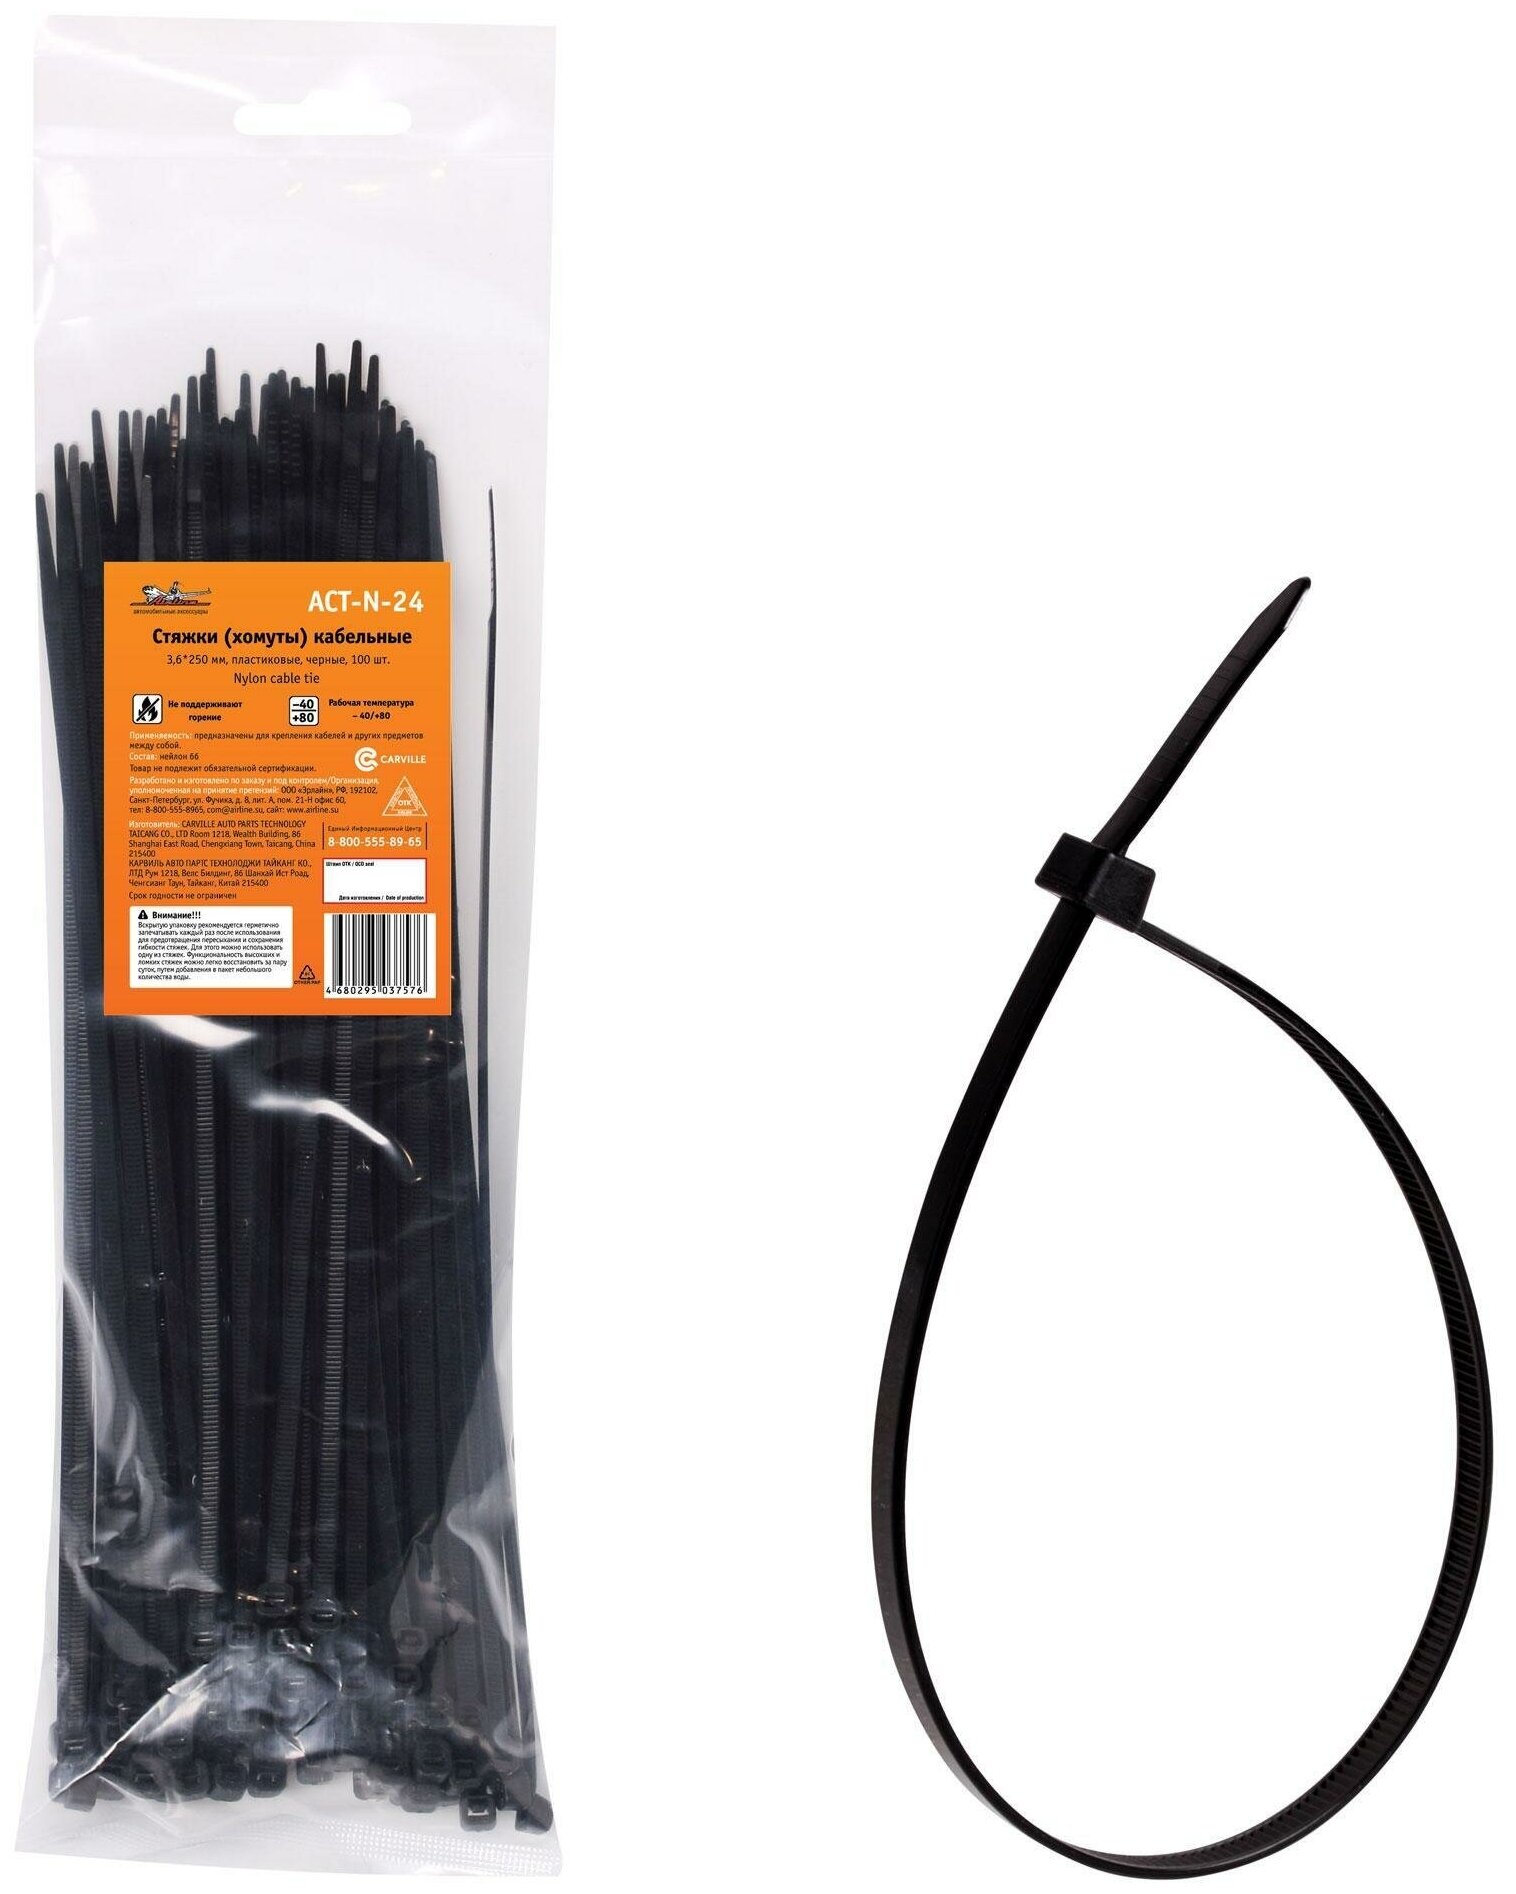 Стяжки (хомуты) кабельные 3,6*250 ММ, пластиковые, черные, 100 ШТ. ACTN24 Стяжки (хомуты) кабельные 3,6*250 мм, пластиковые, черные, 100 шт. ACT-N-24